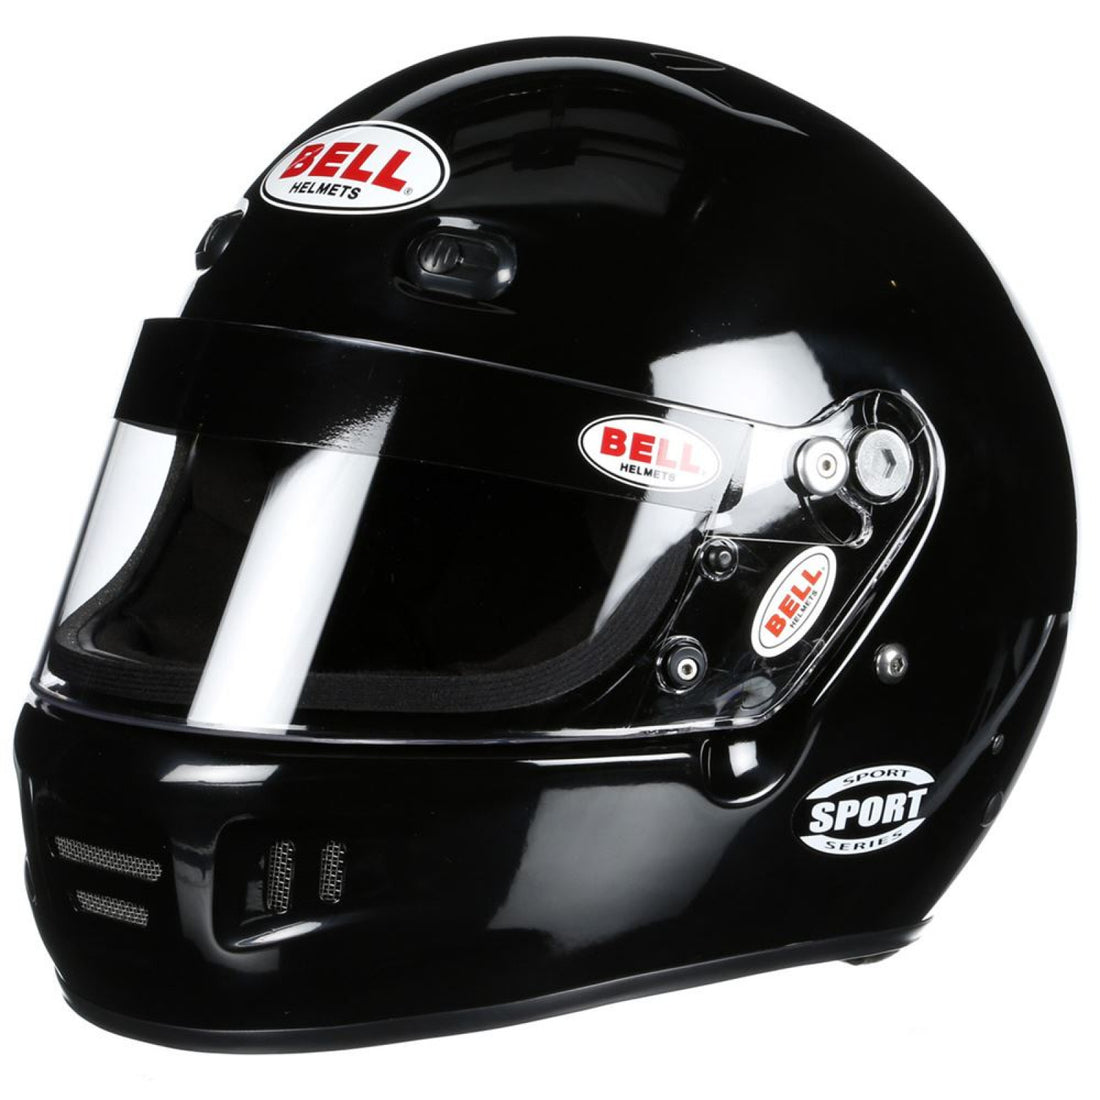 Bell K1 Sport Black Helmet Large (60)